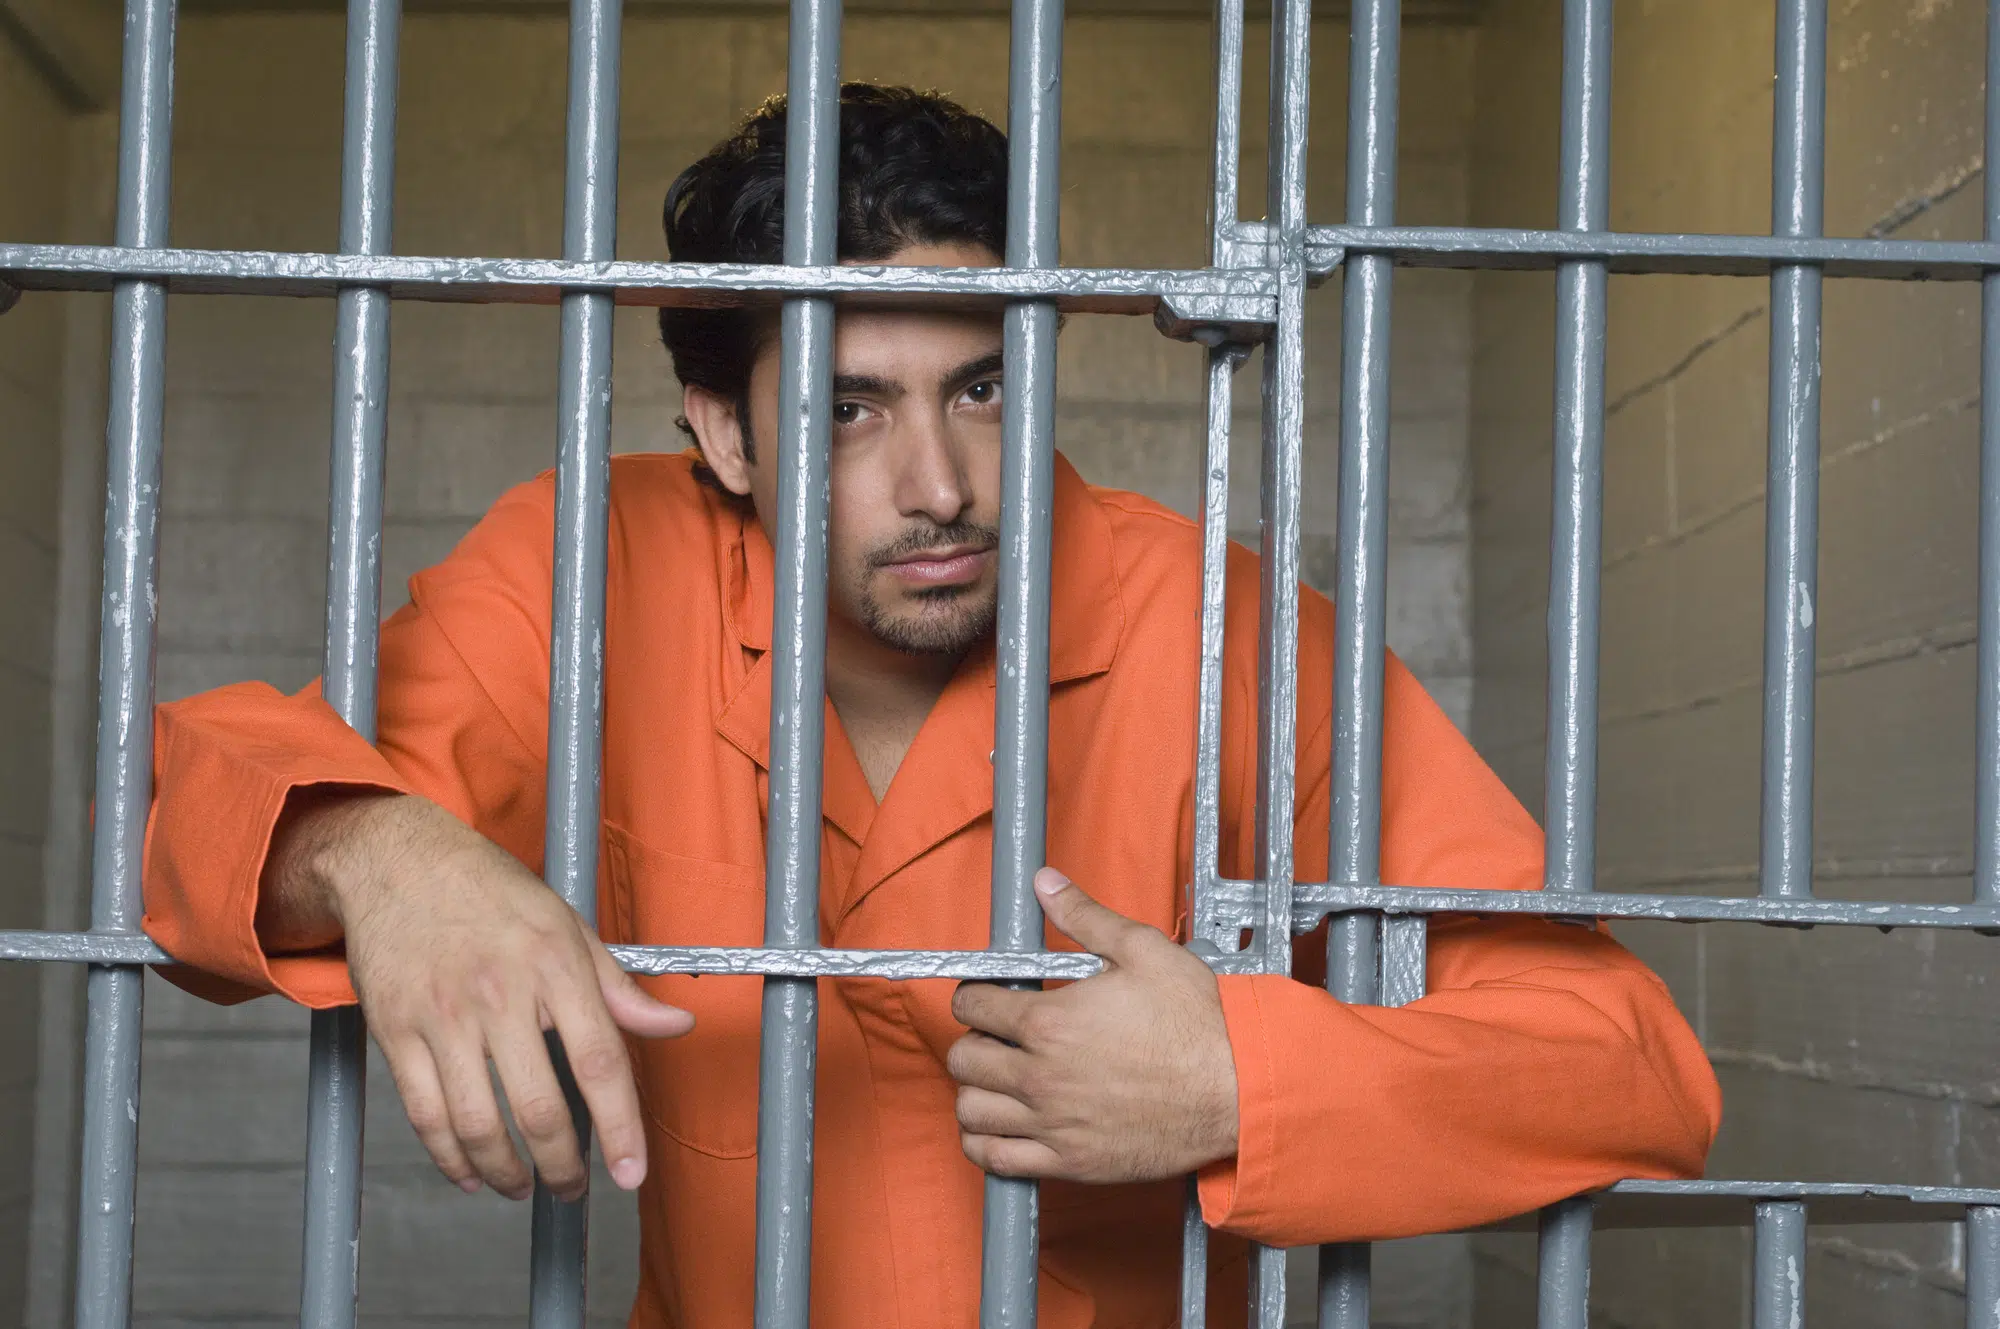 Portrait of prisoner in jail